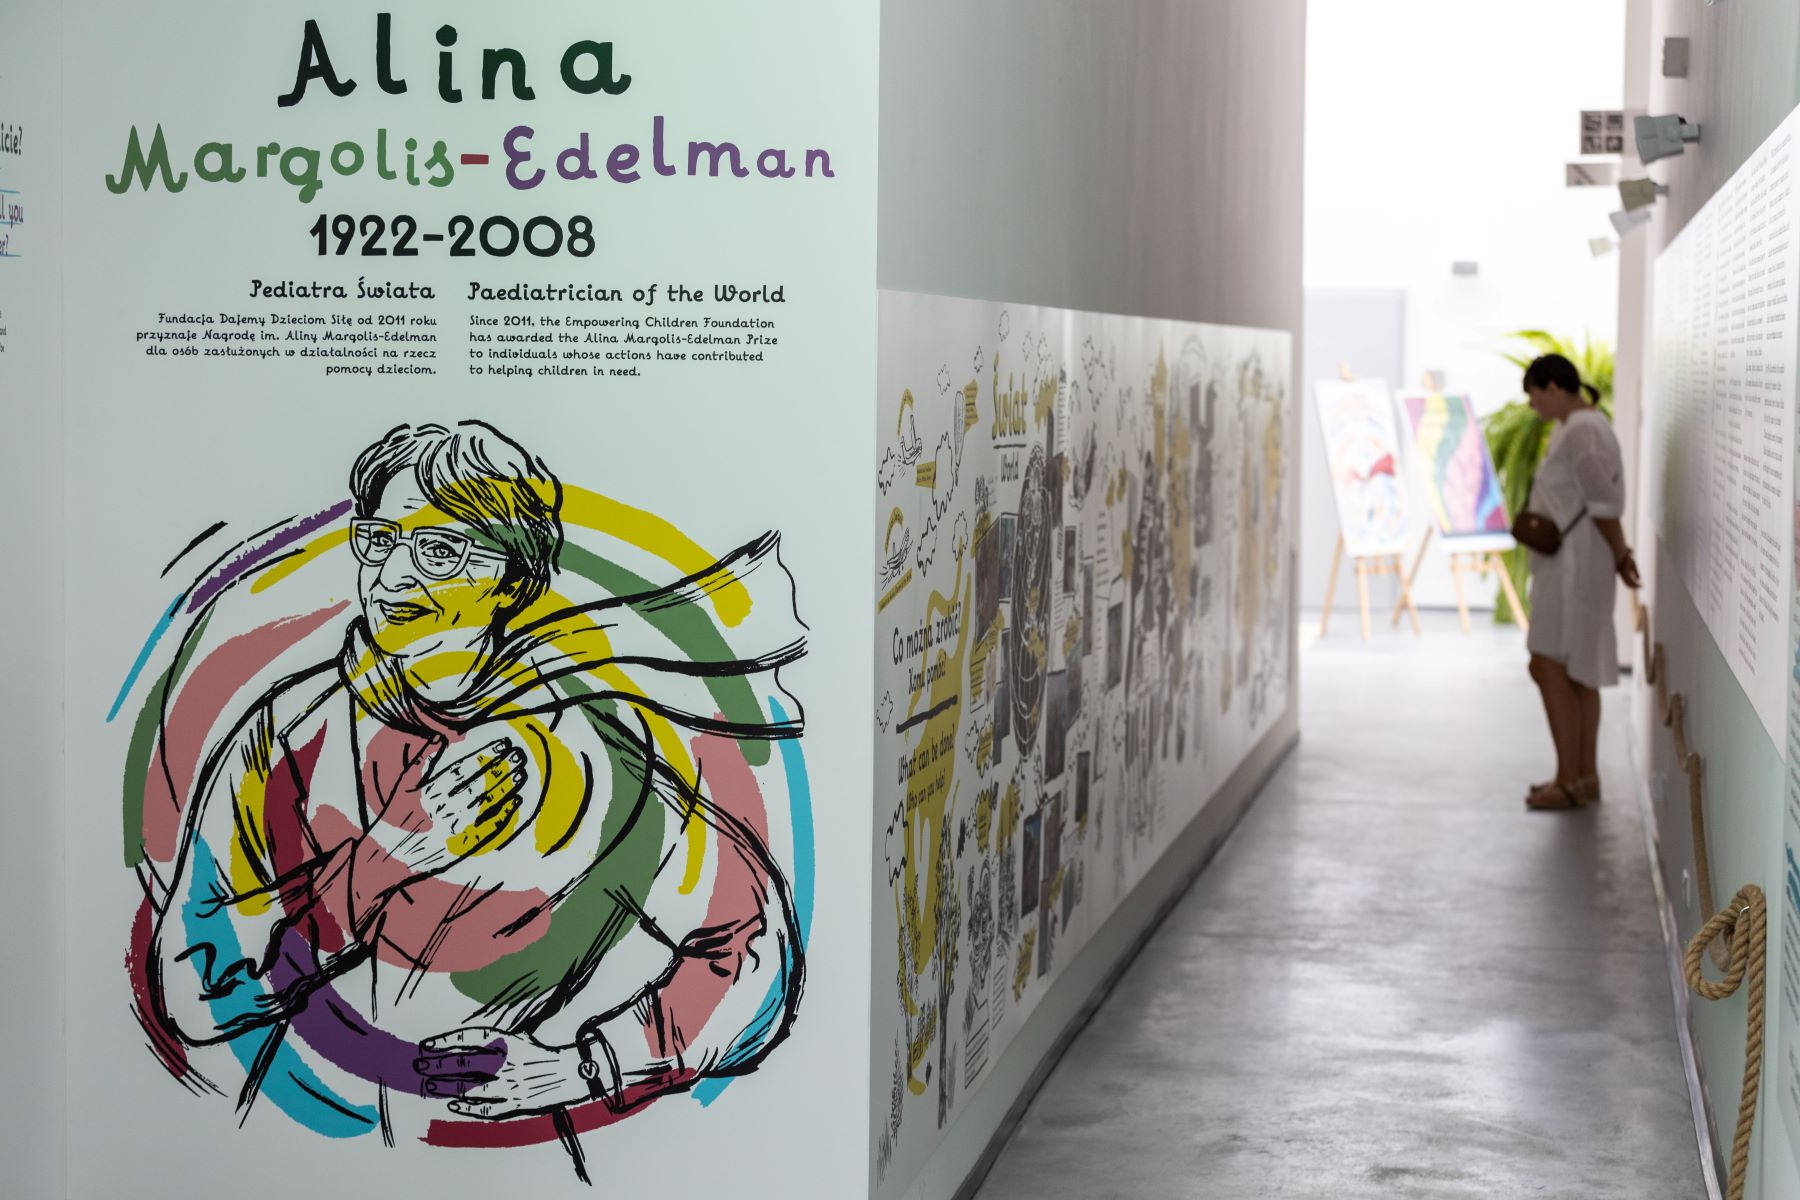 Wystawa "Elementarz empatii" w Łodzi. Zwiedzająca ogląda obrazki narysowane na ścianie. Przy wejściu na ekspozycję kolorowy rysunek przedstawiający postać Aliny Margolis-Edelman.